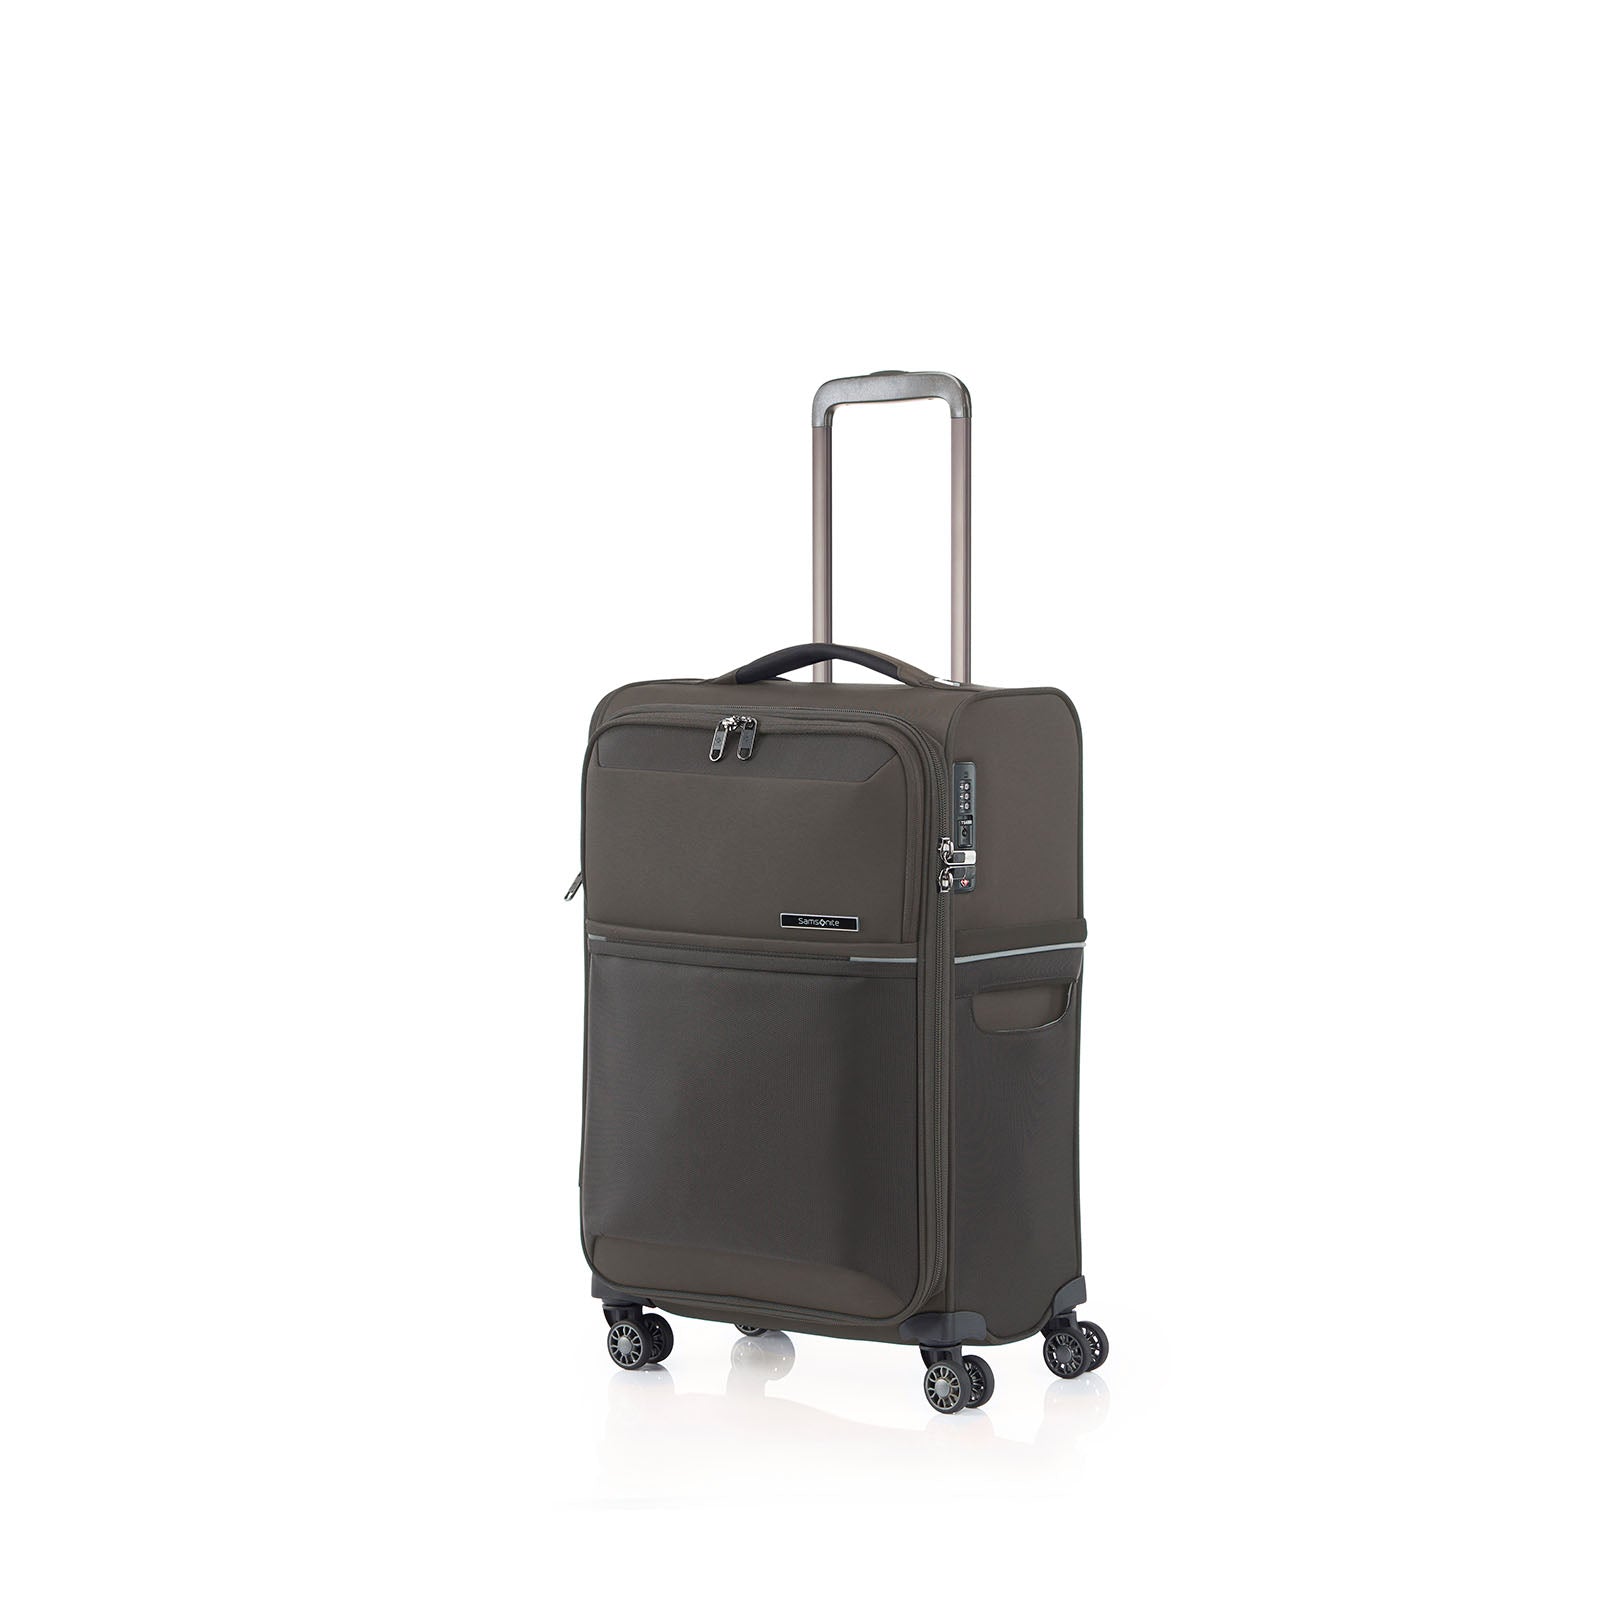 Samsonite-73h-55cm-Suitcase-Platinum-Grey-Front-Angle